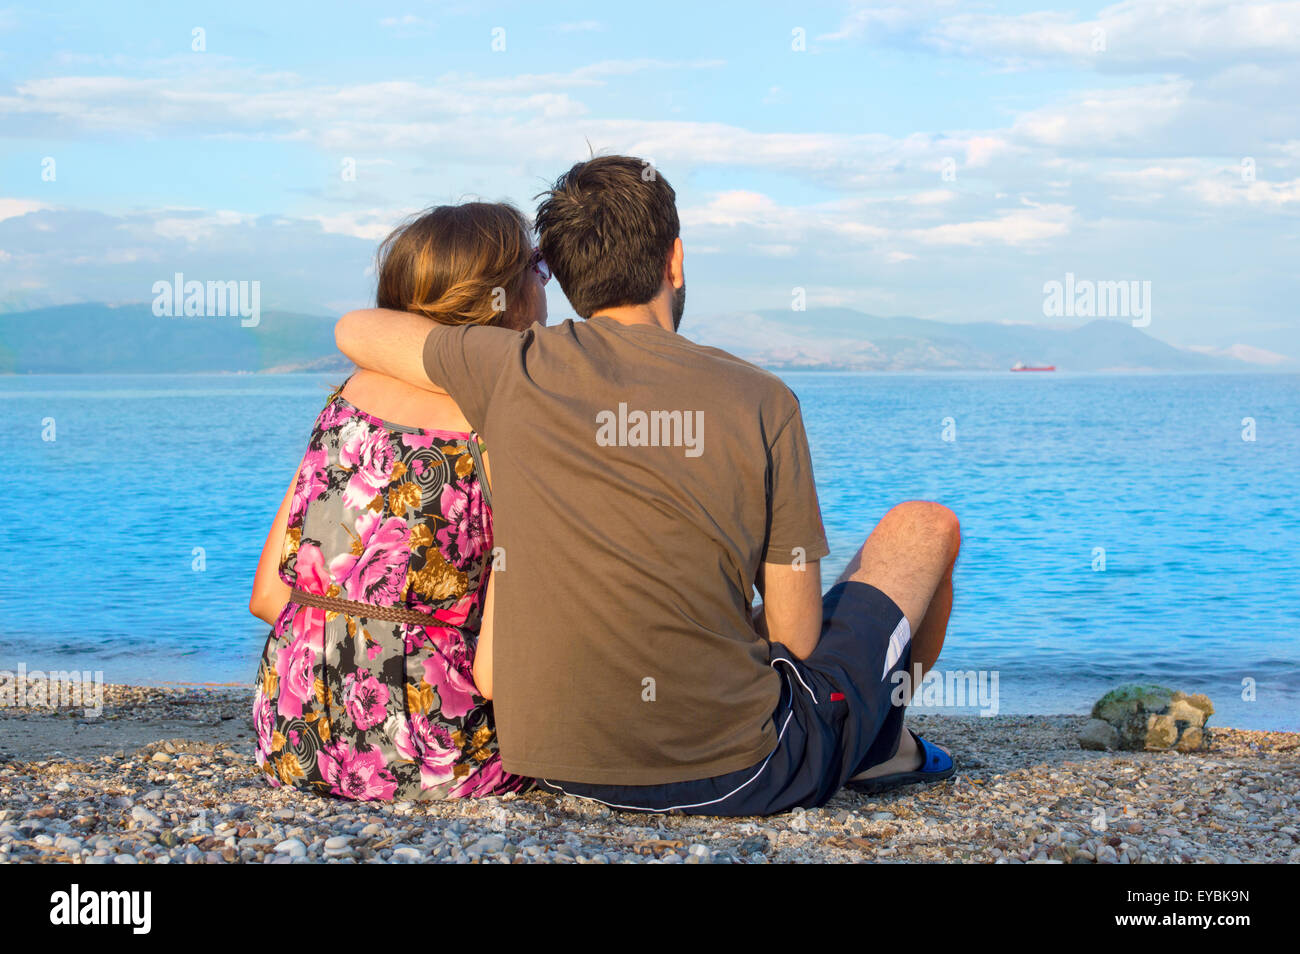 Giovani amare giovane seduti insieme su una spiaggia rocciosa e guardando il mare Foto Stock